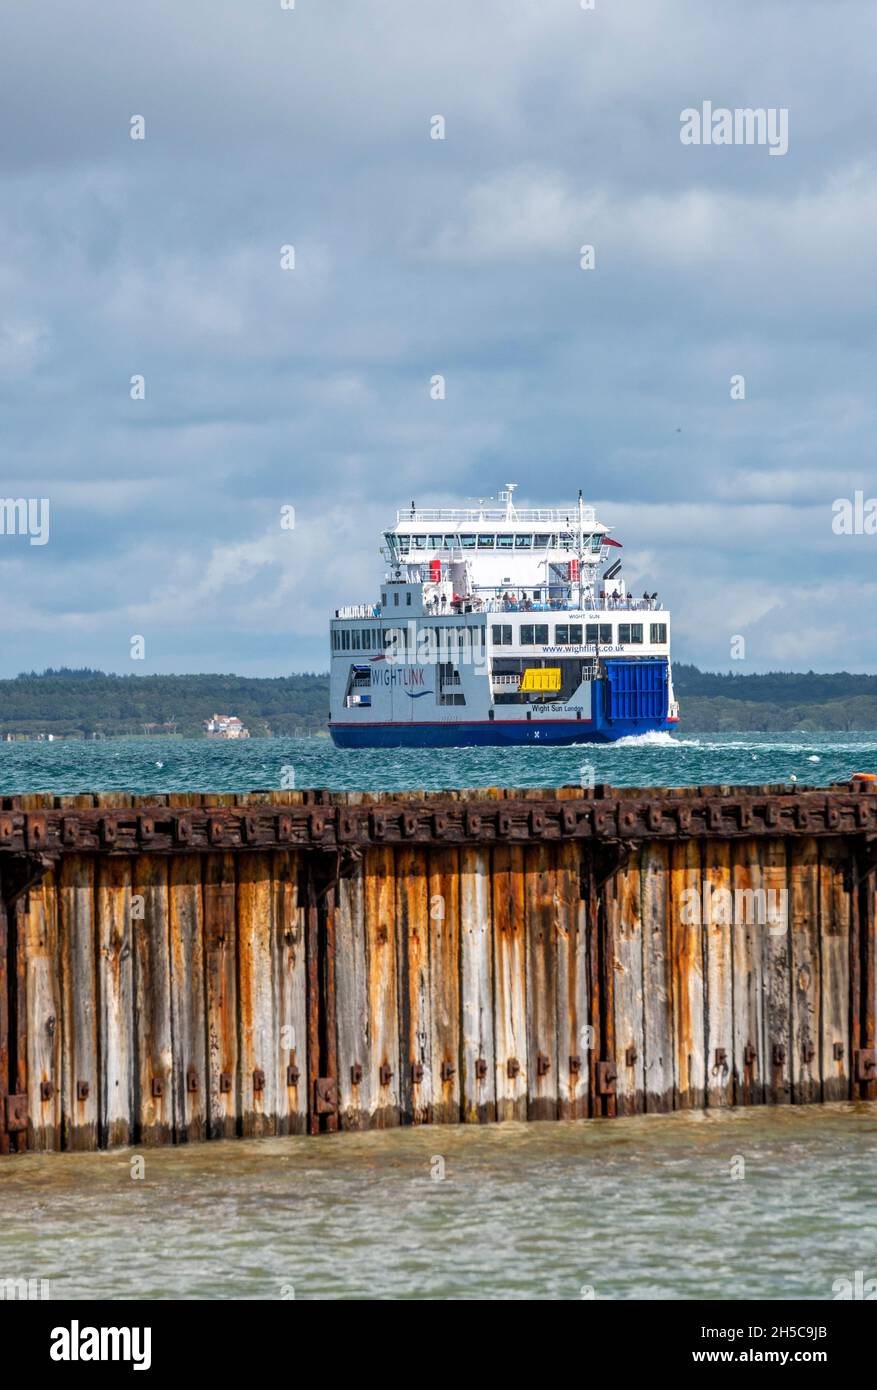 servicio de ferry de la isla de wight que sale del puerto de yarmouth en la costa de la isla de wight, ferry de la isla de wight que sale hacia lymington. Foto de stock